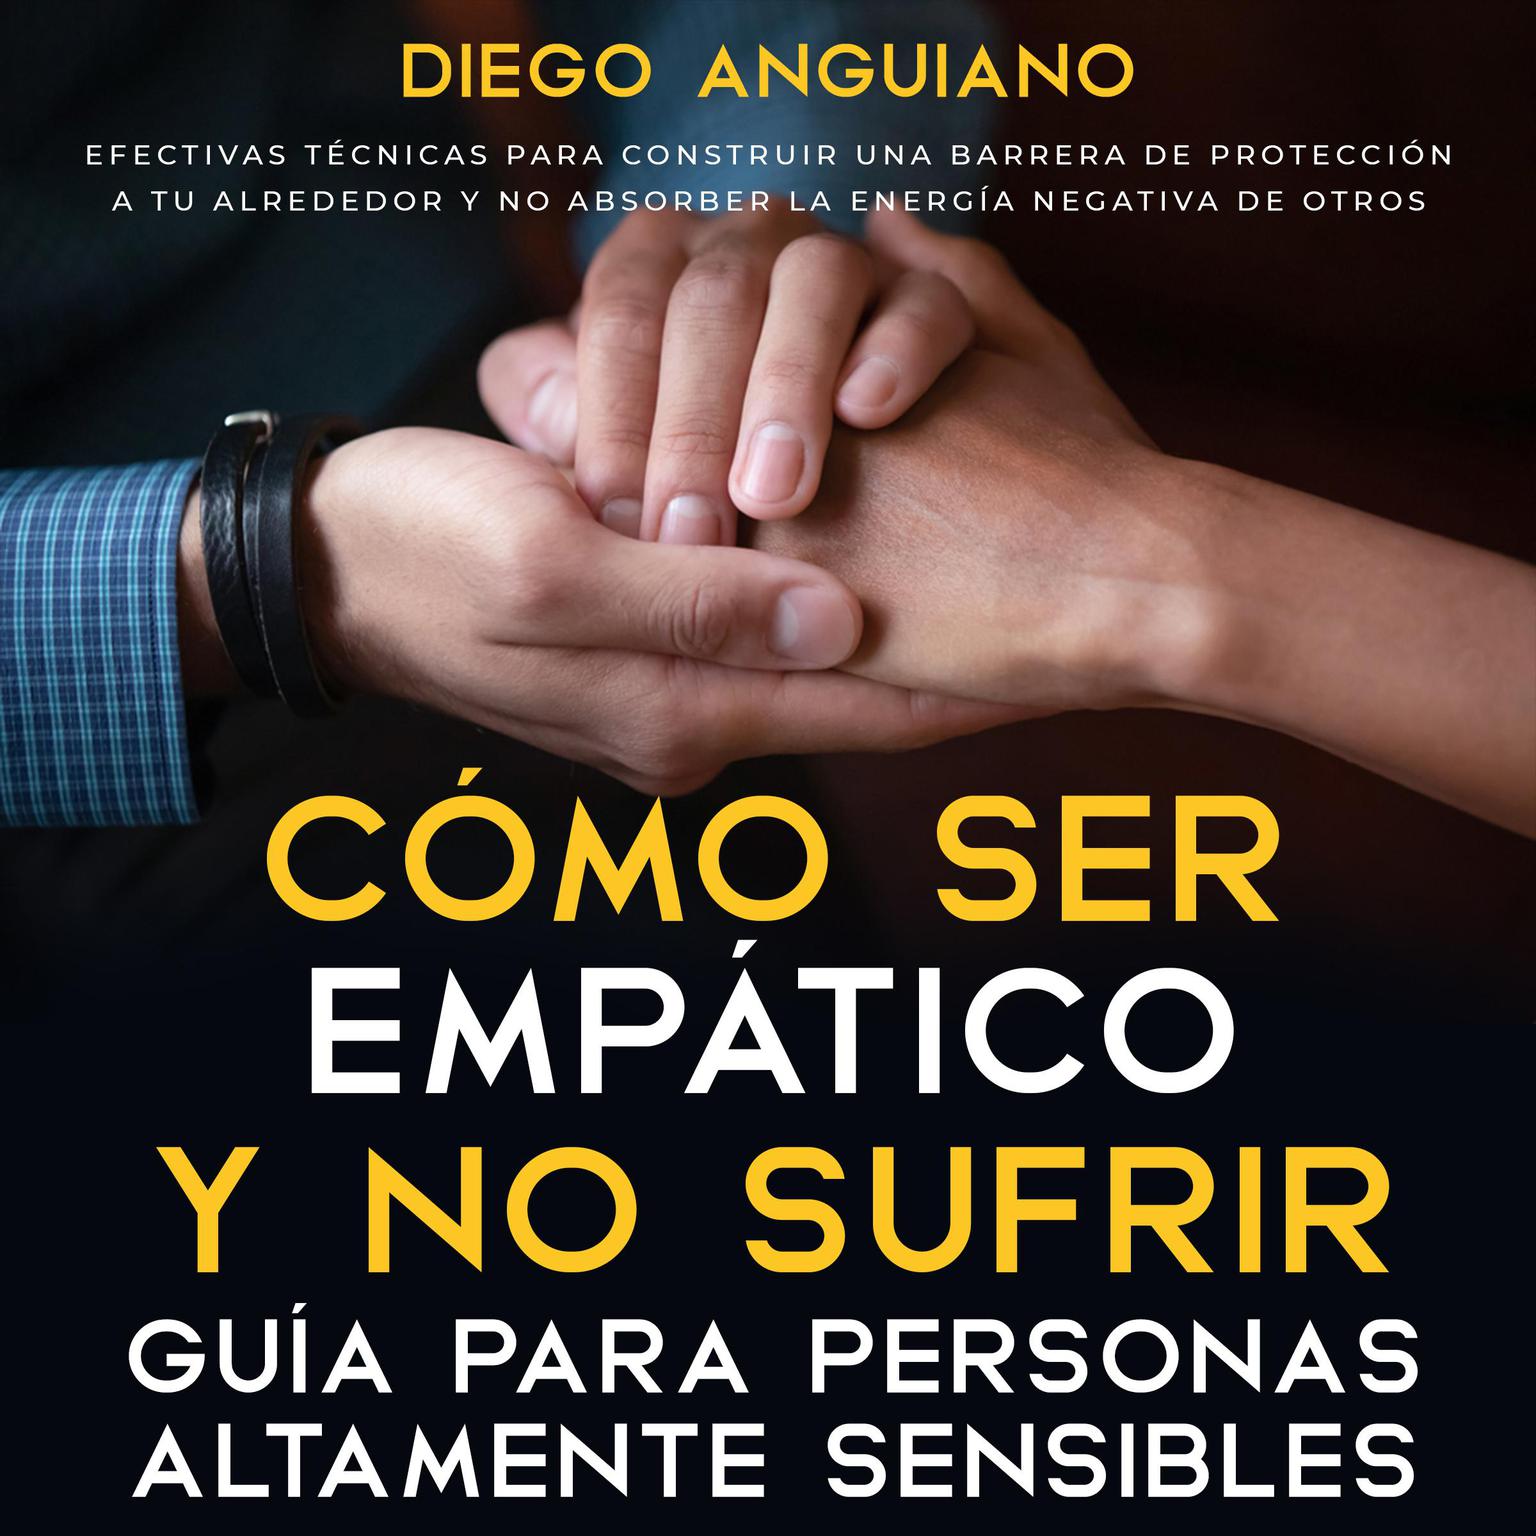 Cómo ser empático y no sufrir: guía para personas altamente sensibles Audiobook, by Diego Anguiano